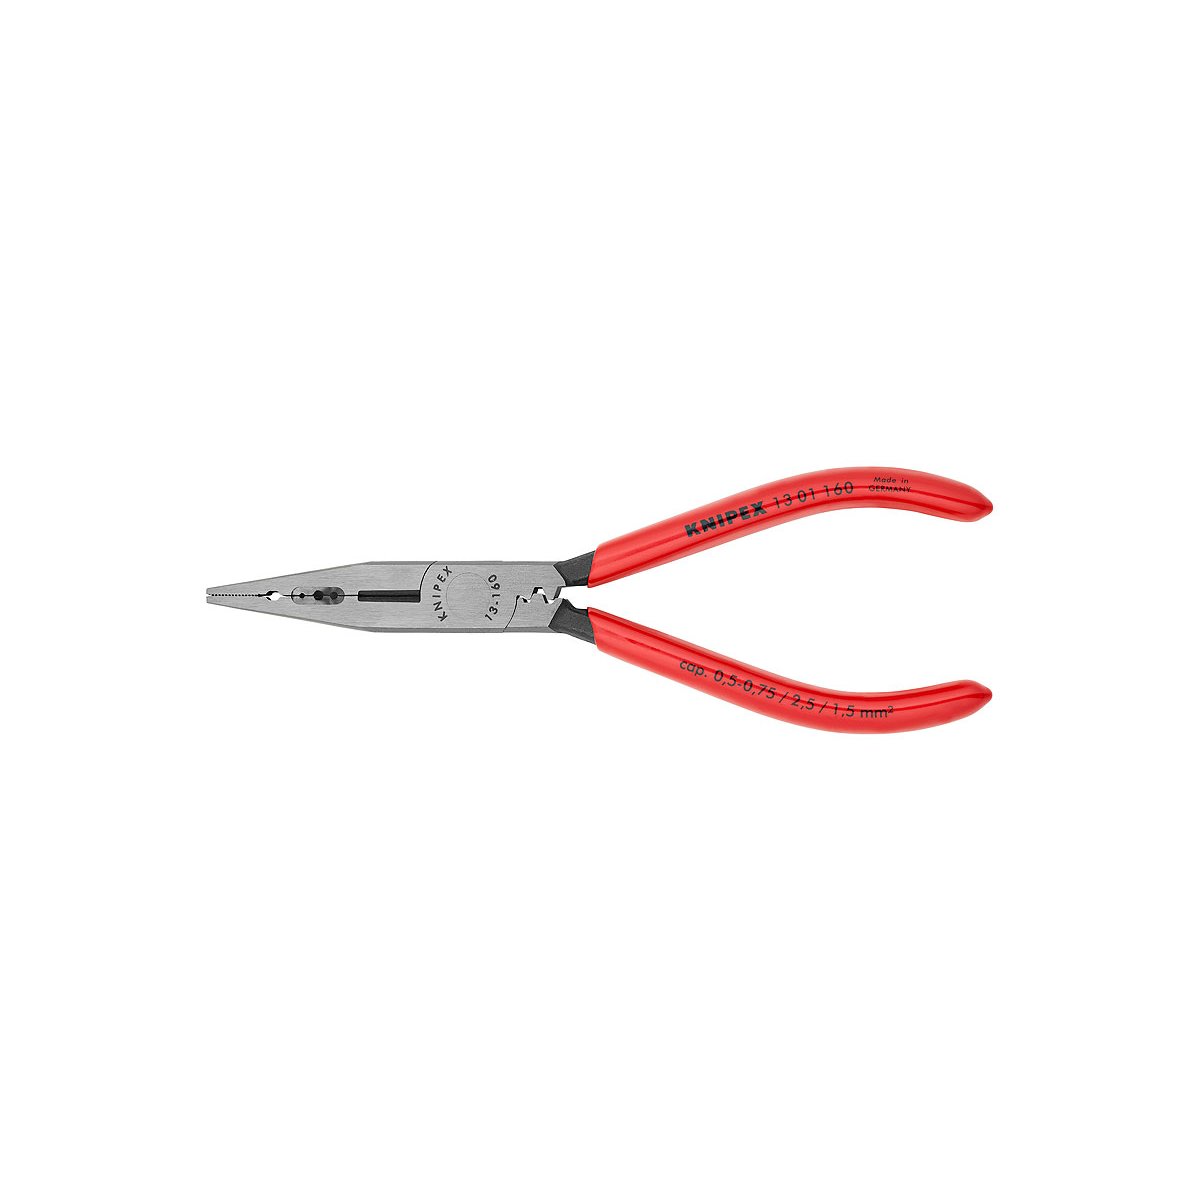 Плоскогубцы электрика для монтажа проводов, 160 мм, фосфатированные, обливные ручки, SB